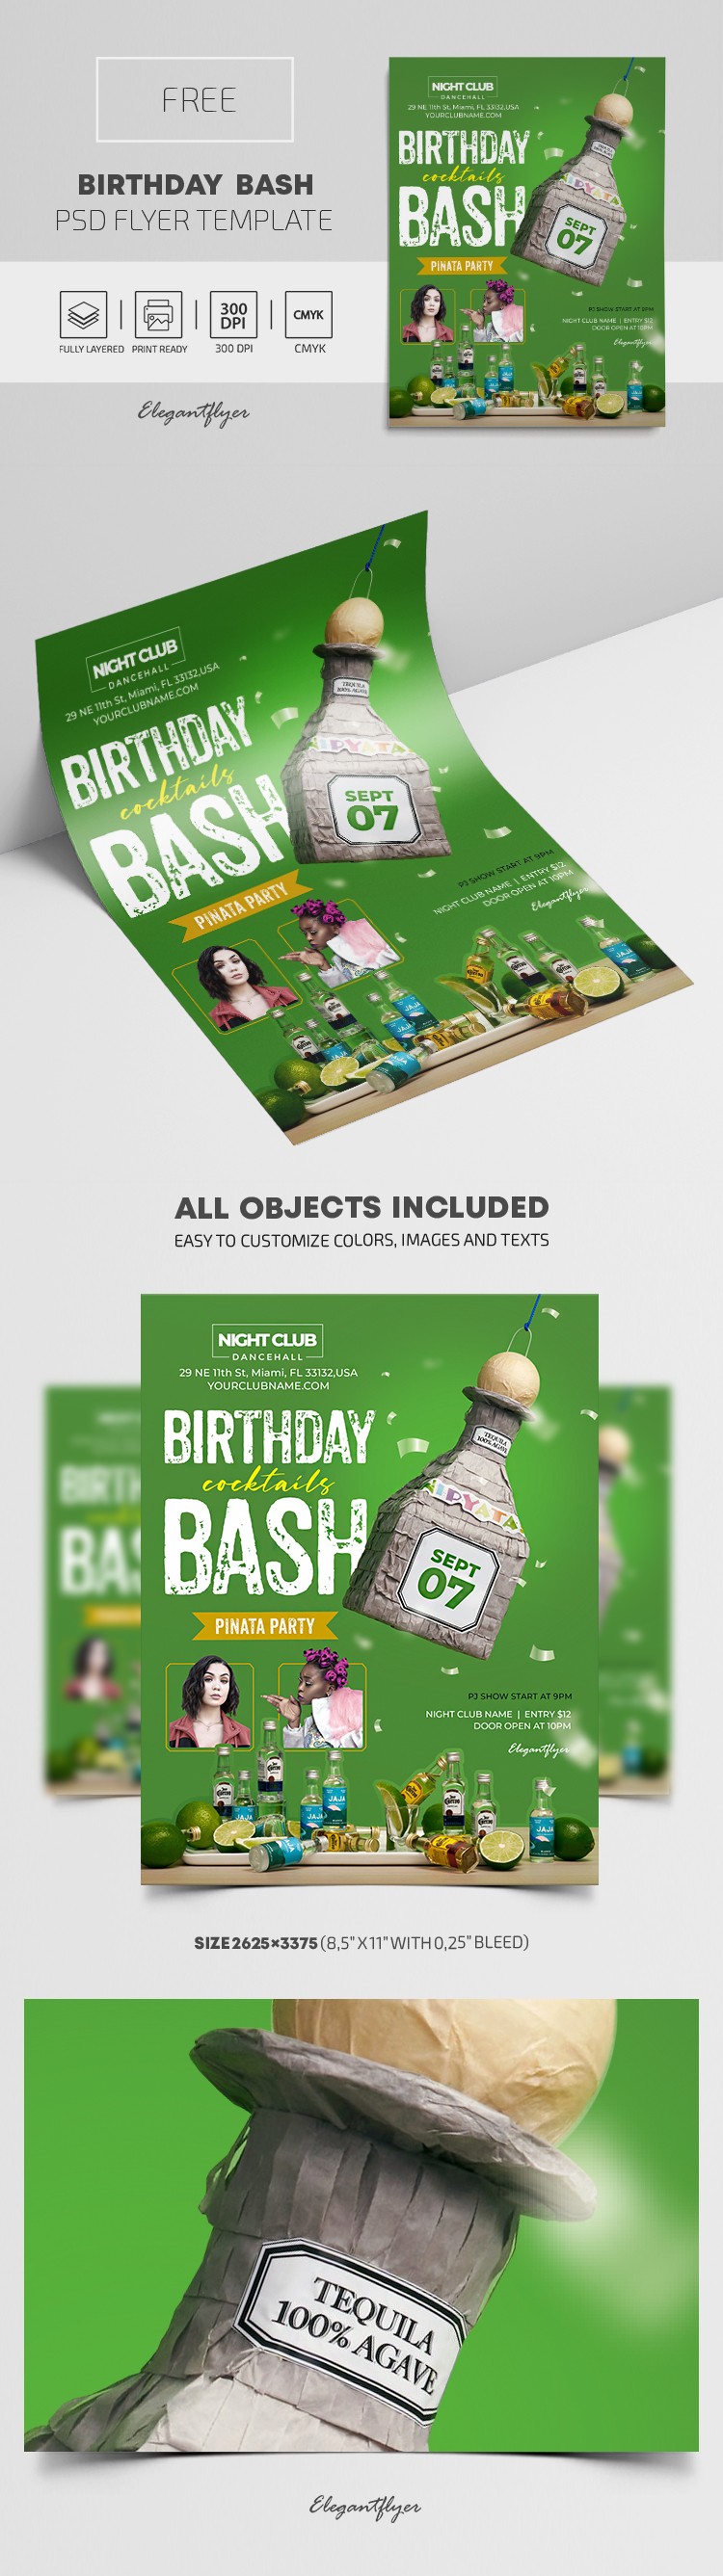 Birthday Bash Flyer by ElegantFlyer